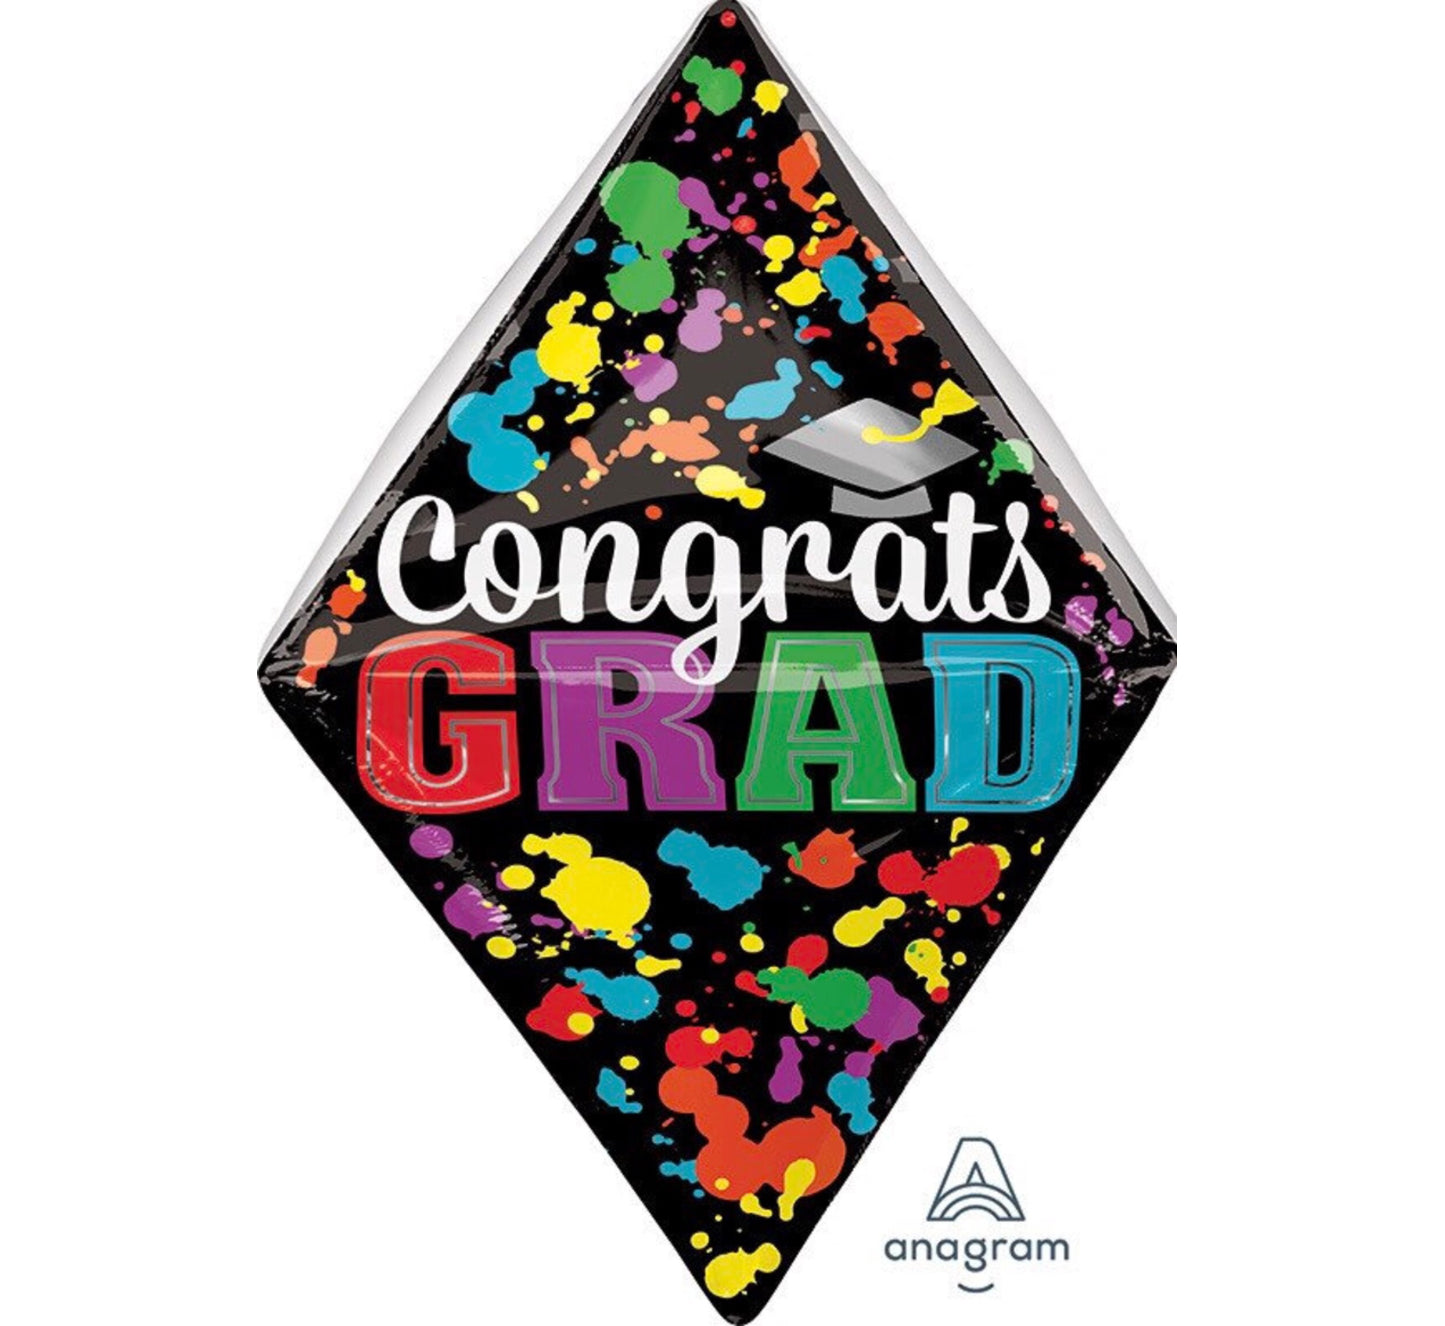 25” Diamond Congrats Grad Balloon